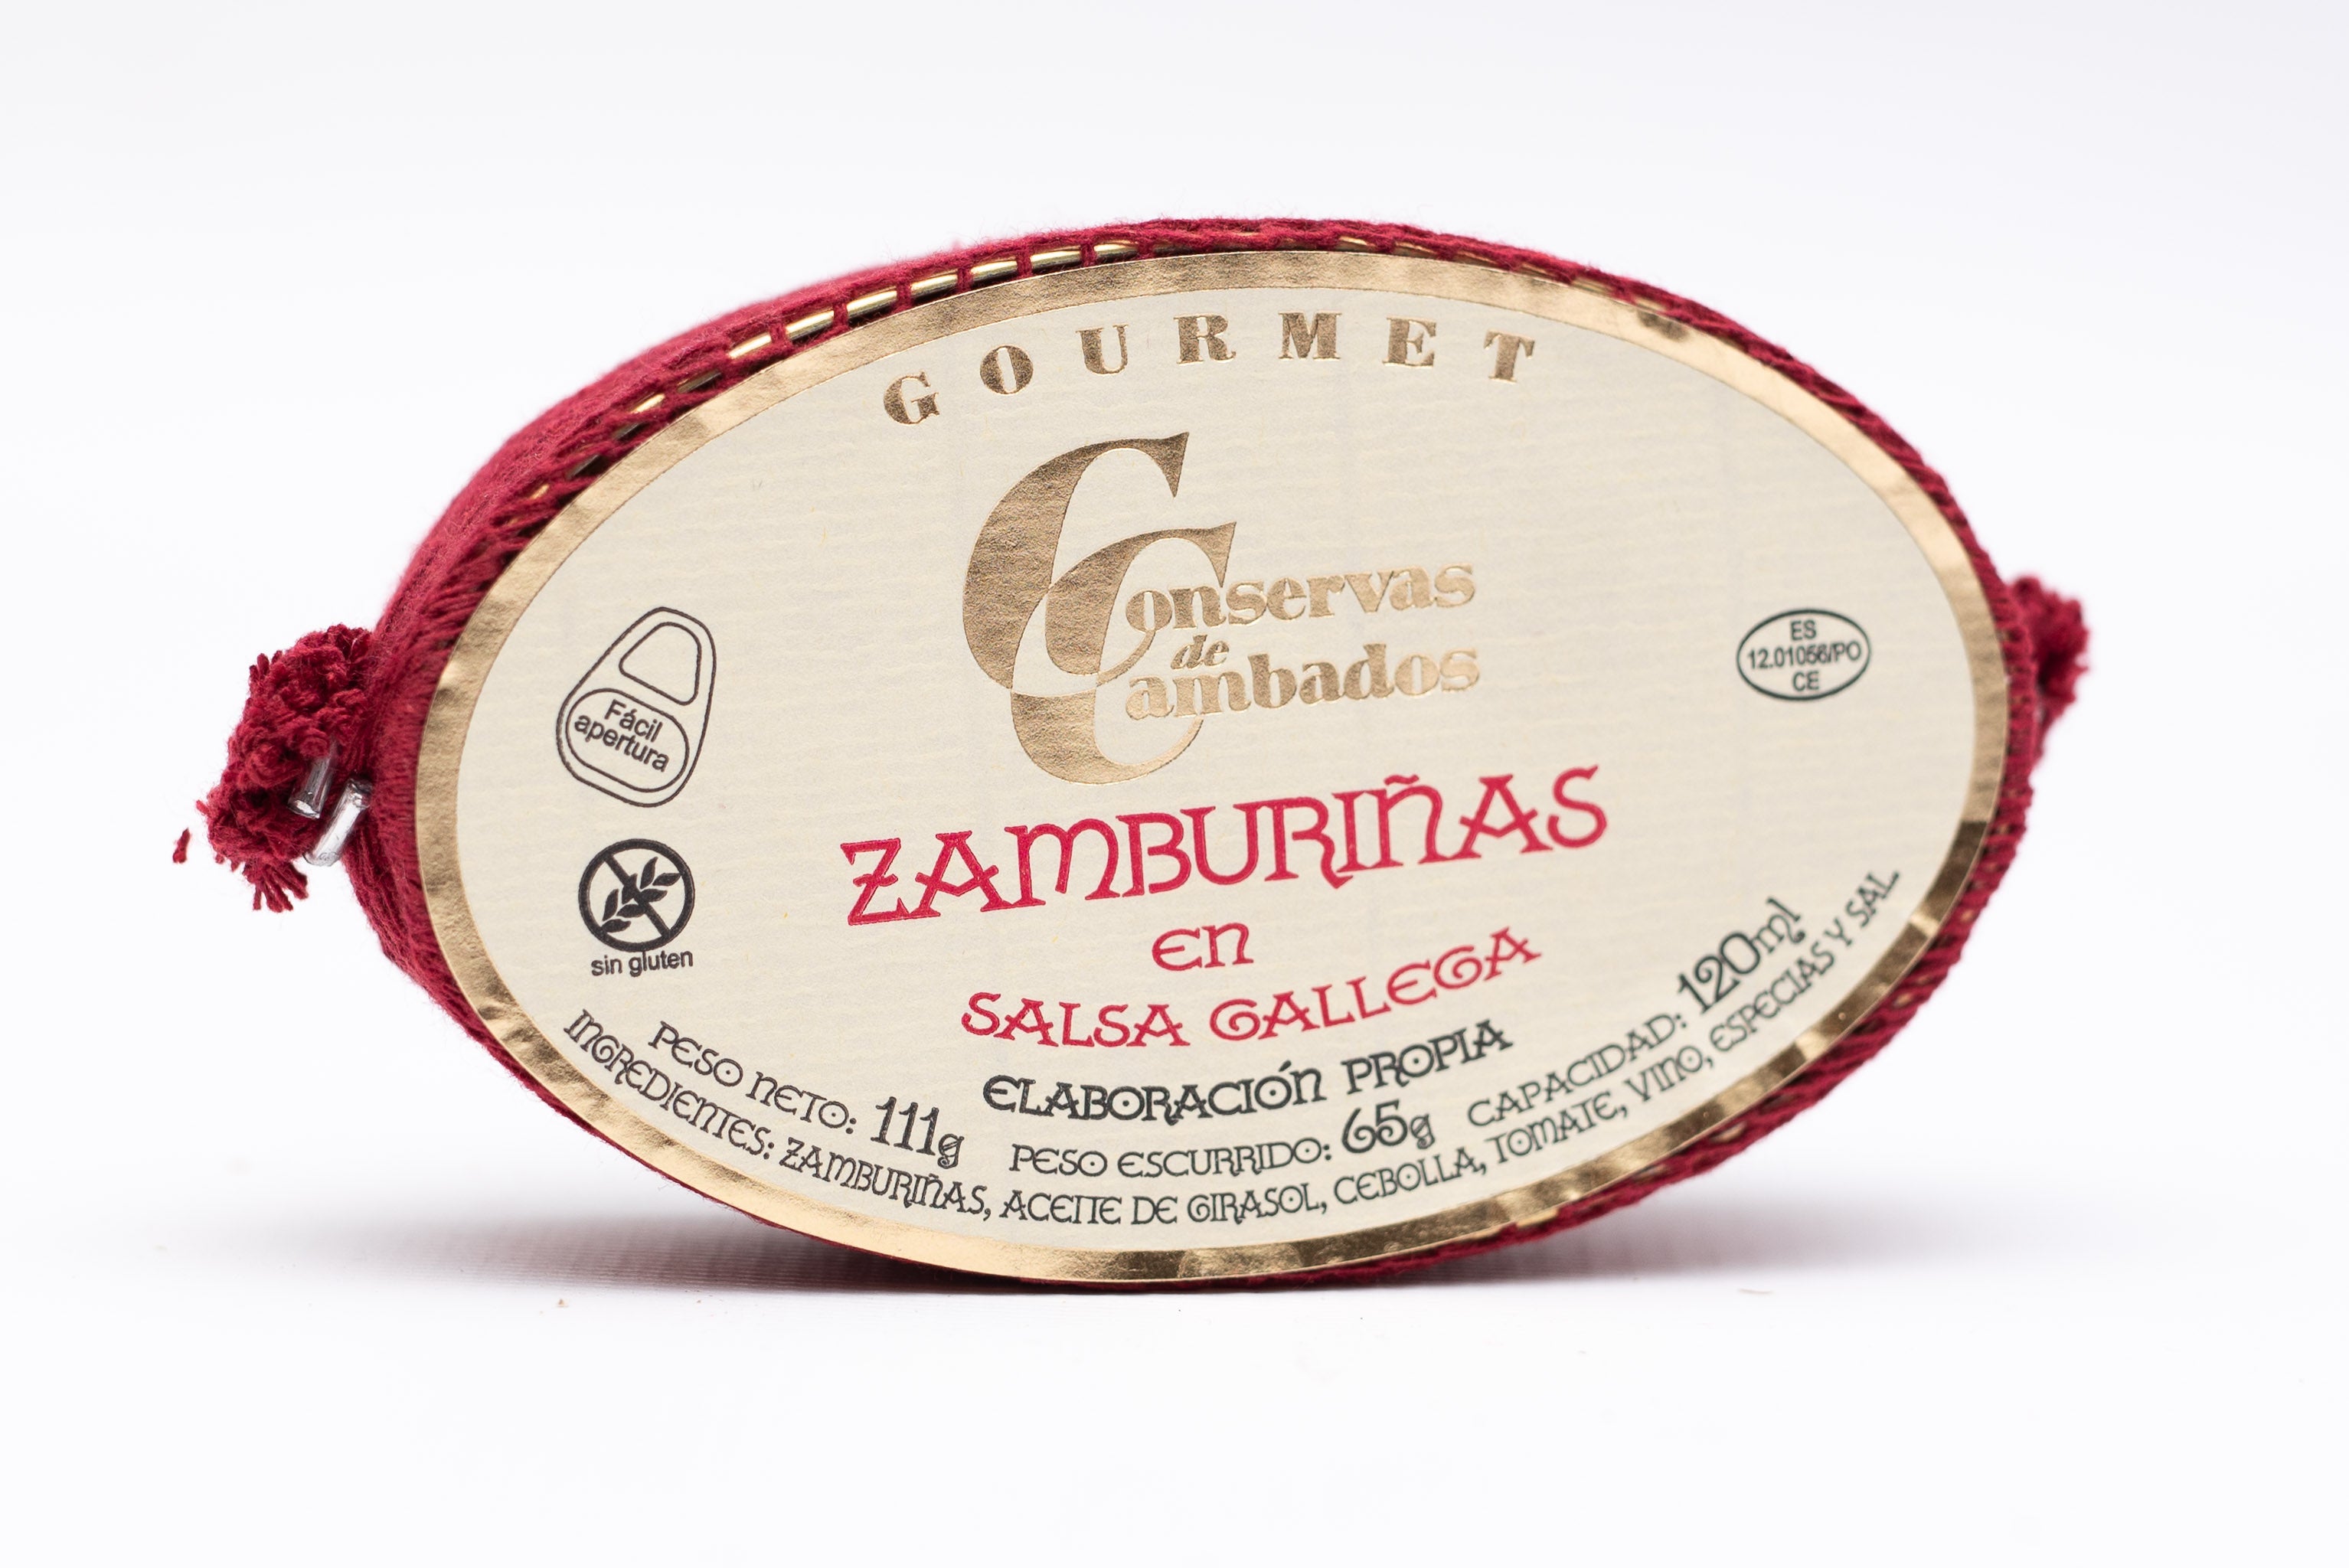 Zamburinas (Scallops) in Galician Sauce - 111g